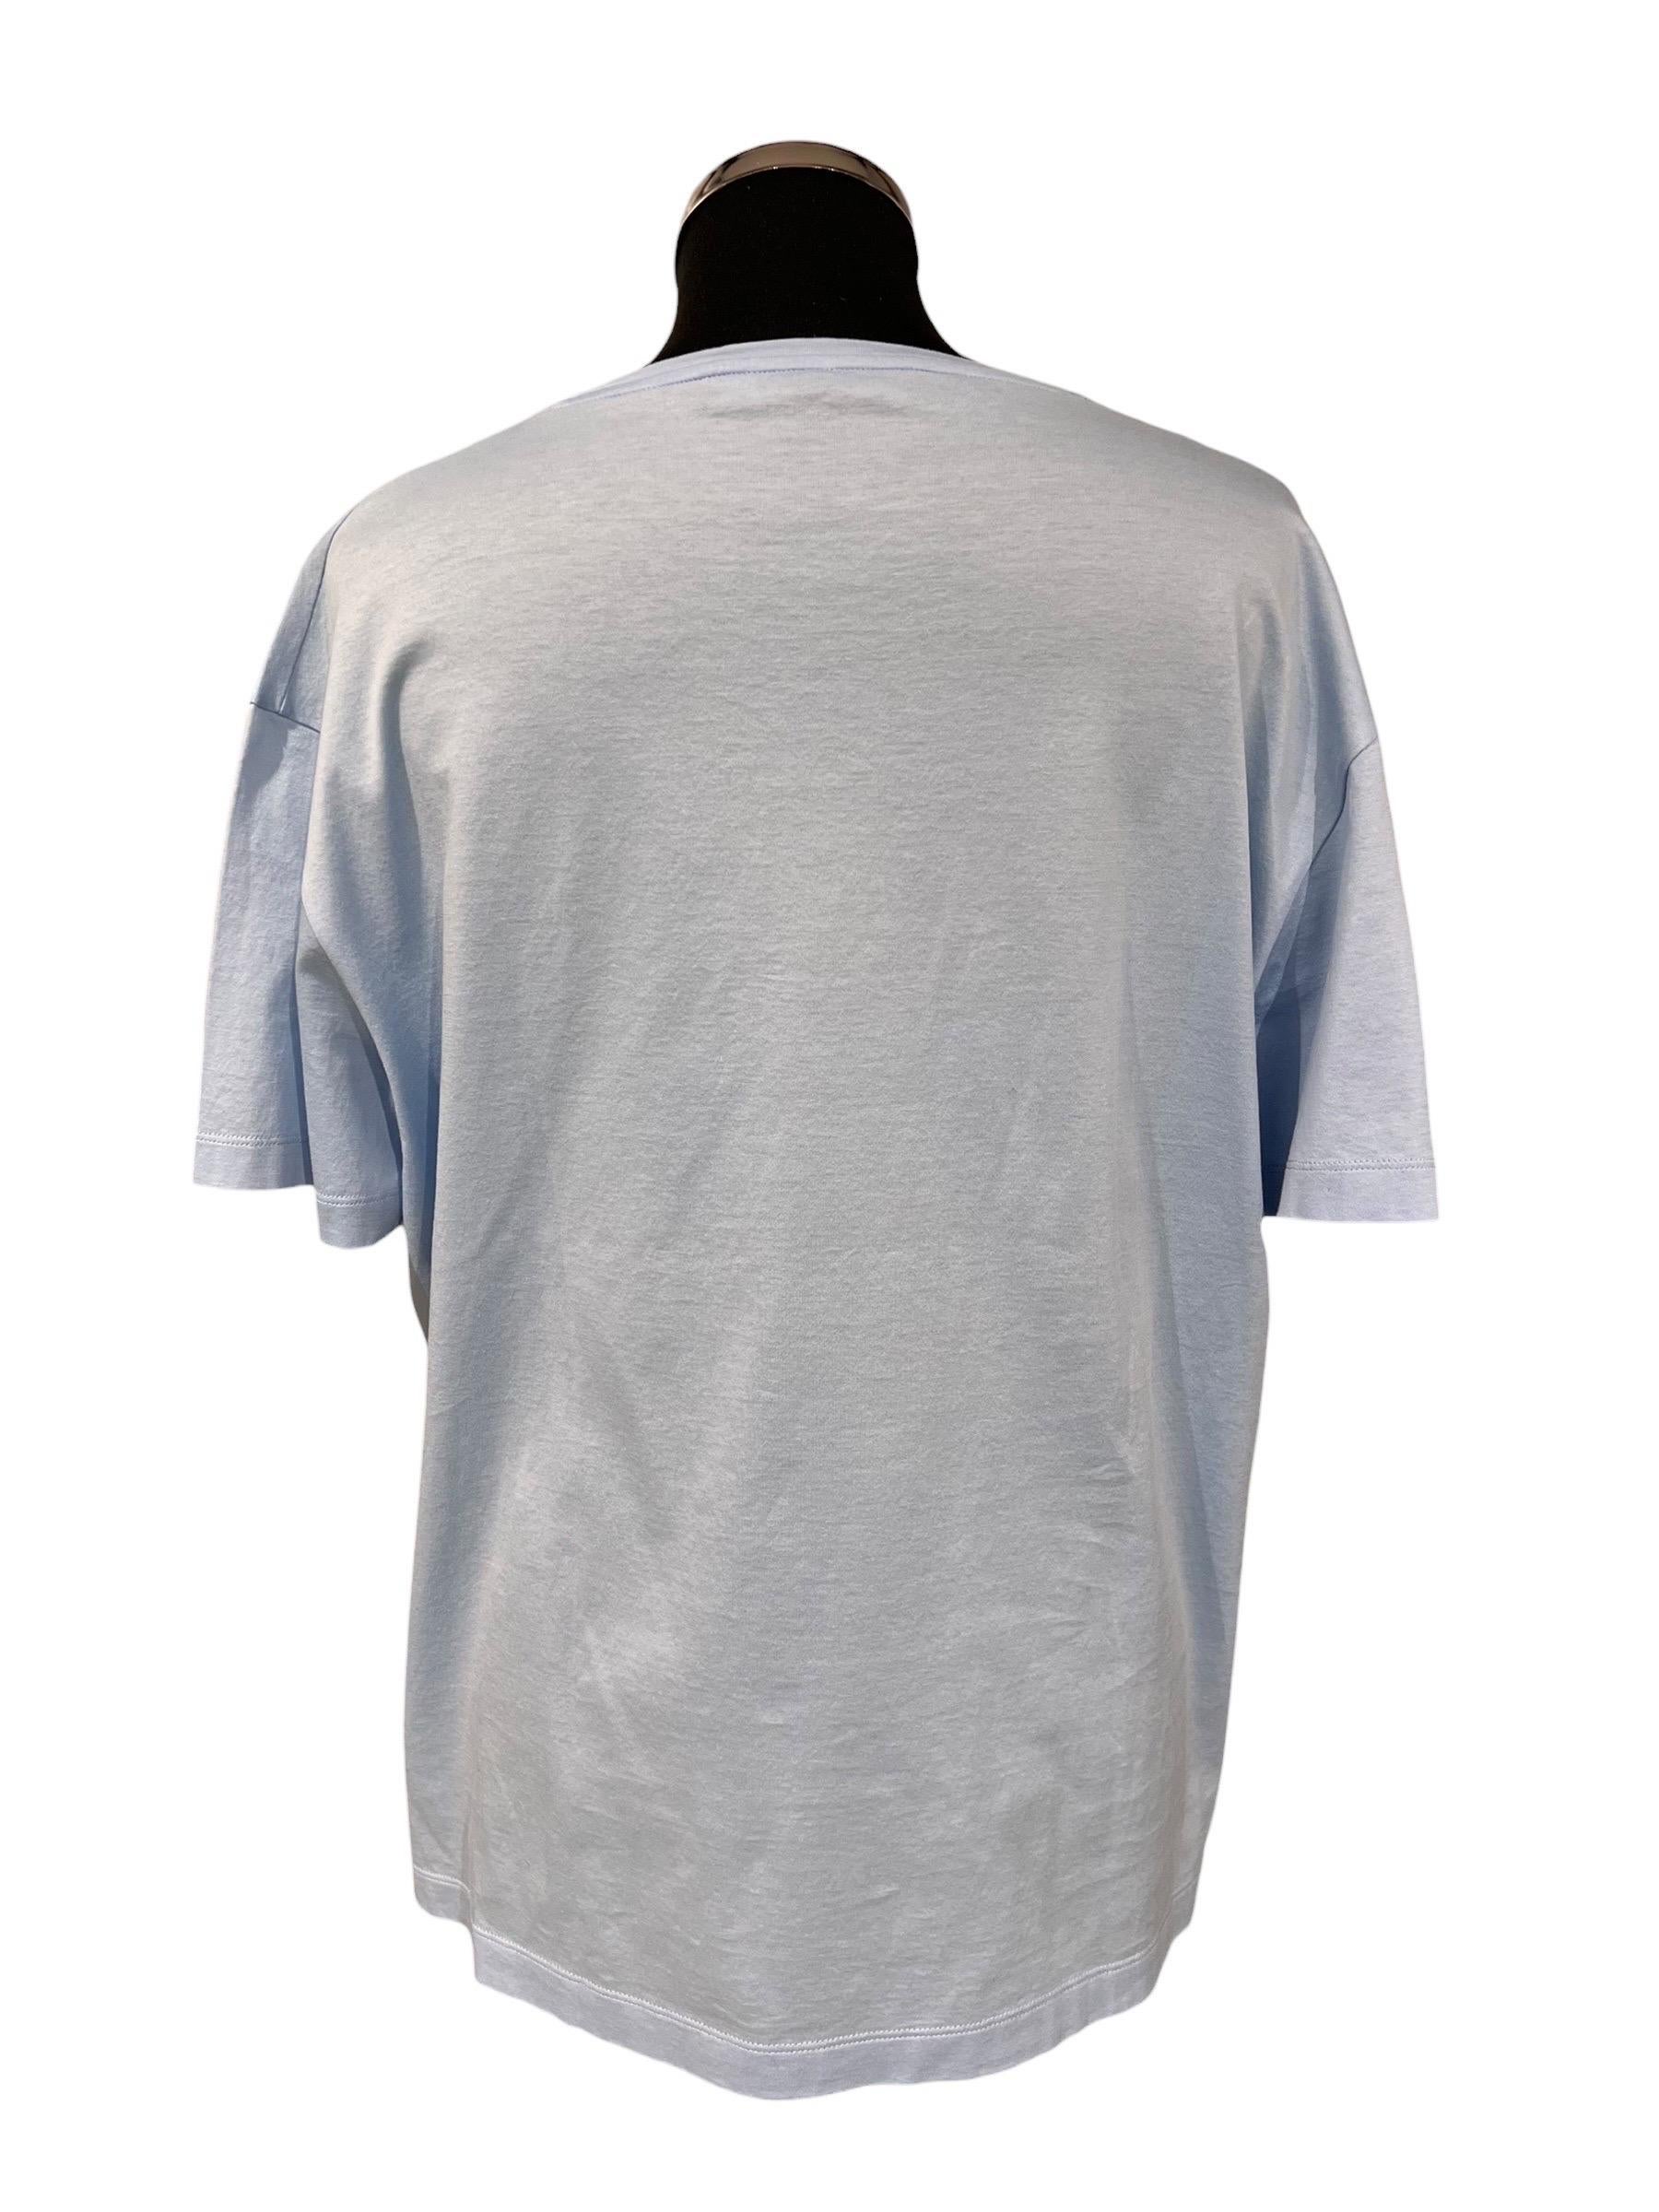 T-Shirt der Firma Versace, hergestellt in cotone di colore celeste con logo del brand in rilievo ricamato di colore bianco sulla parte frontale. Taglia